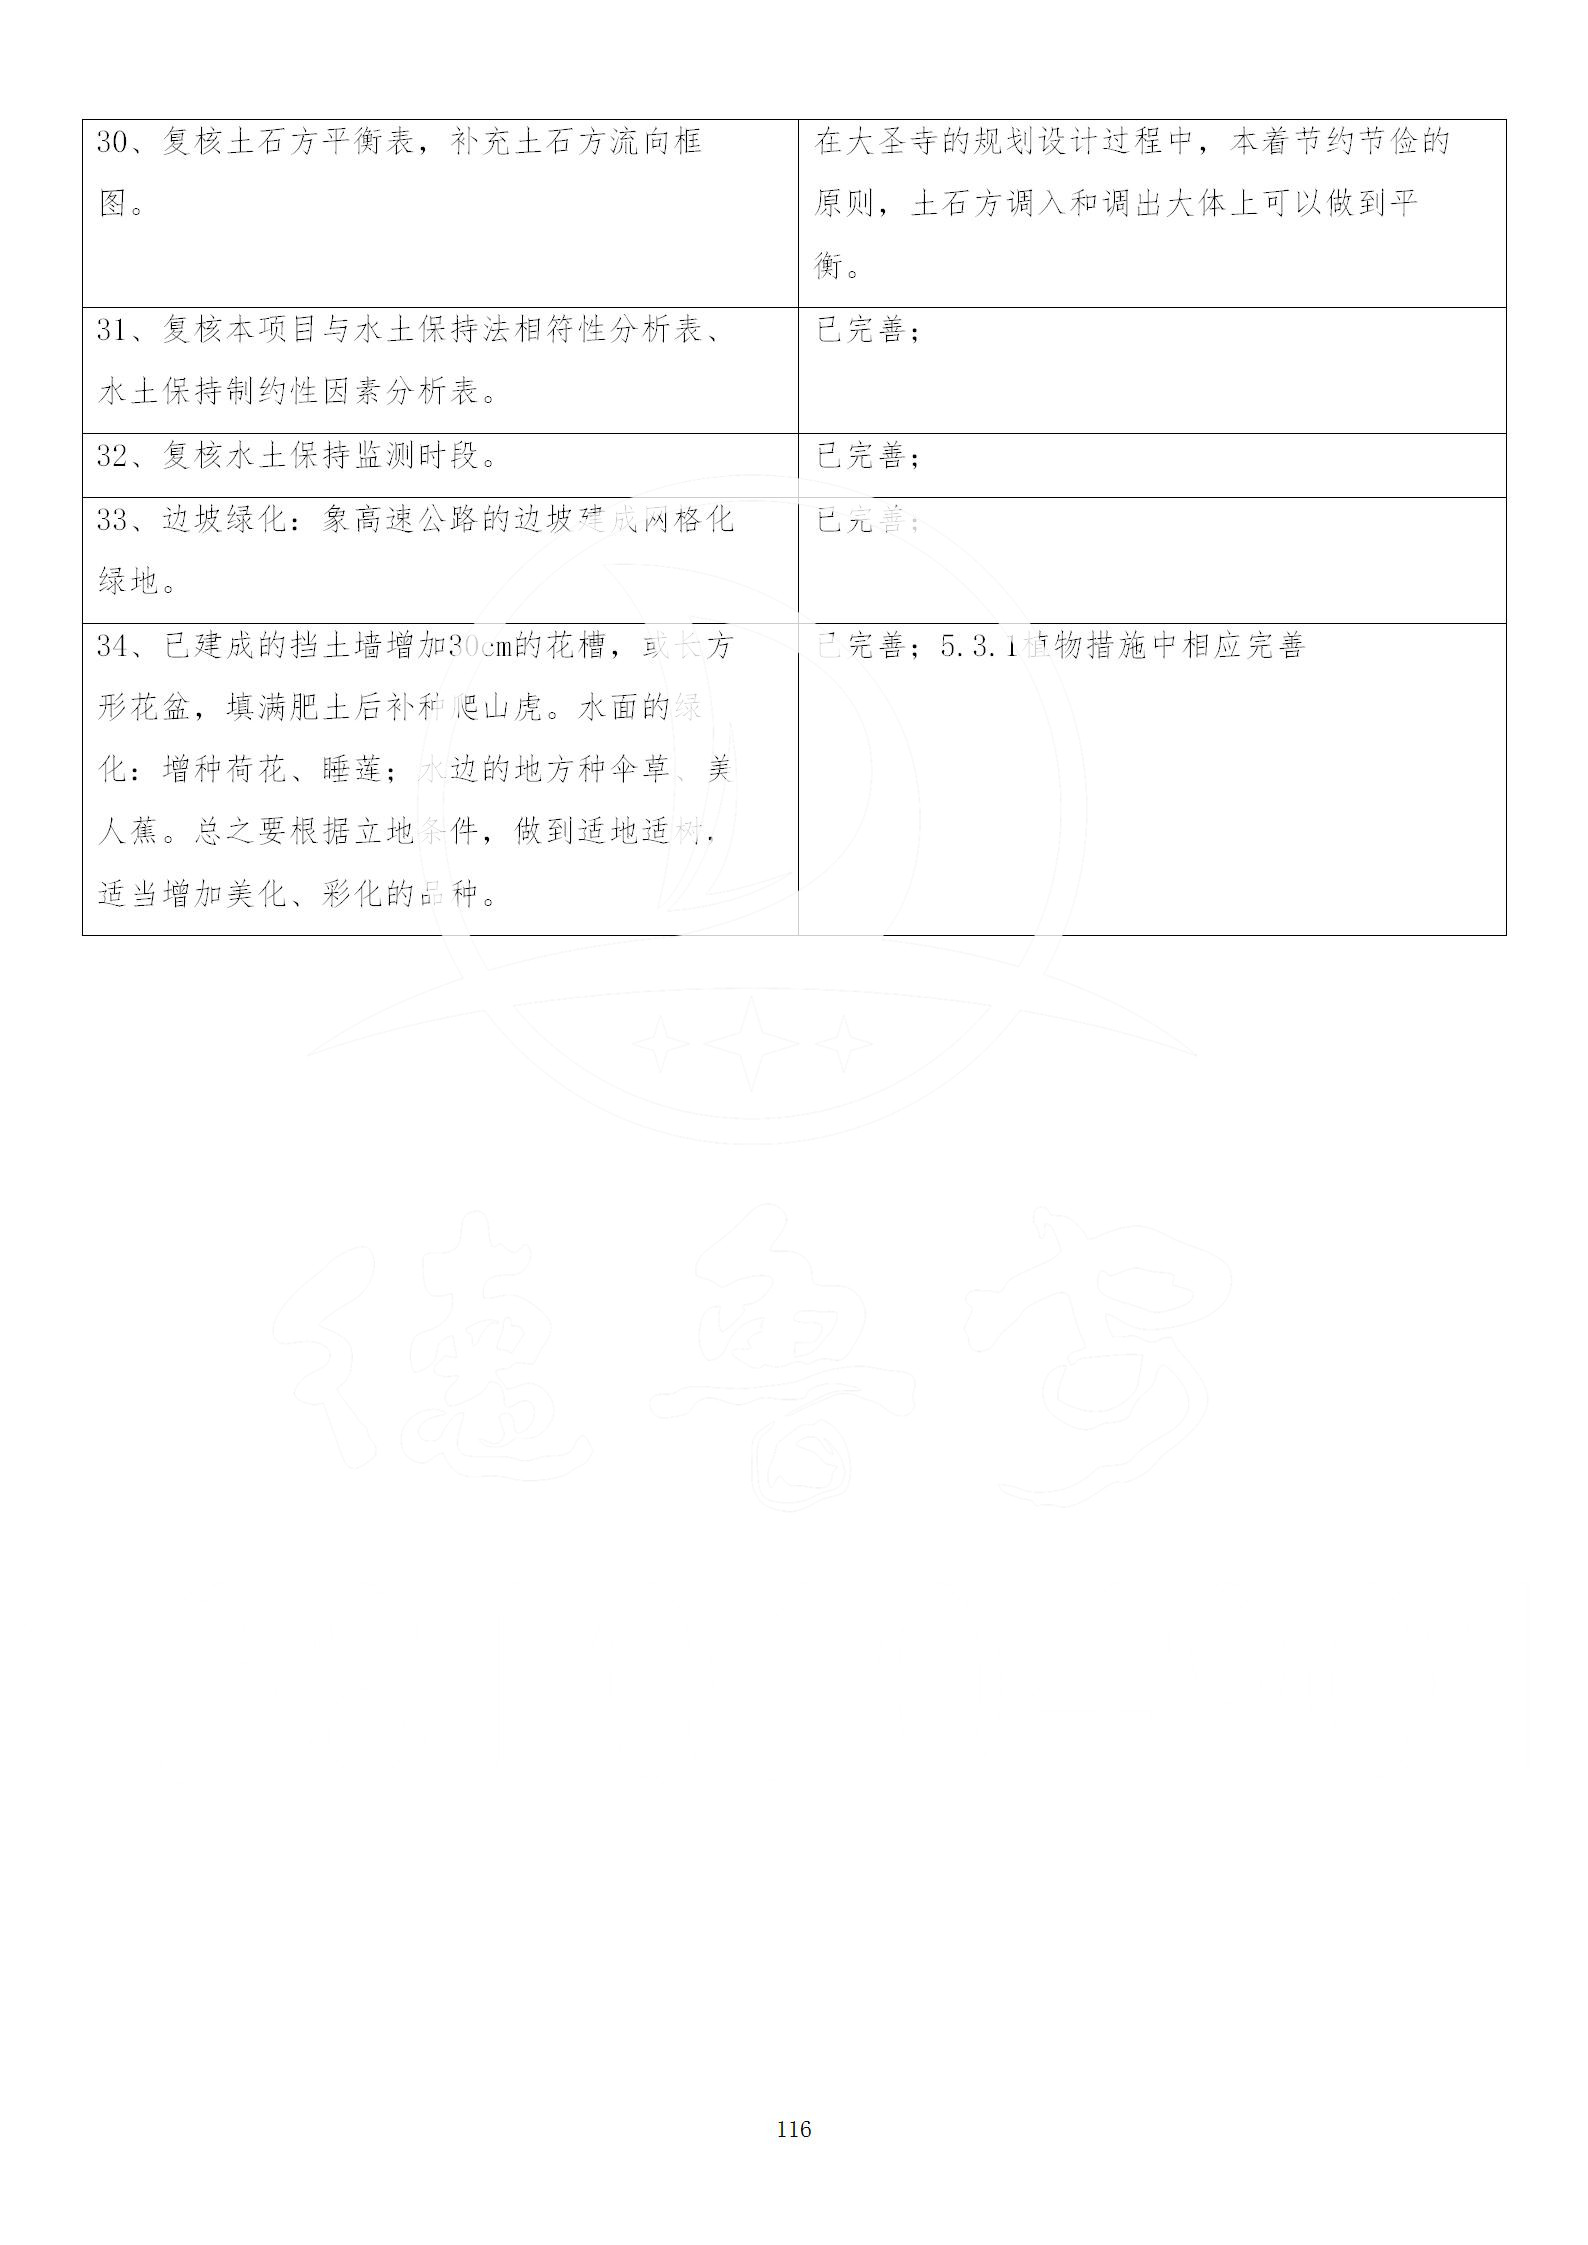 广东省大圣寺水土保持报告  修改稿5_116.jpg